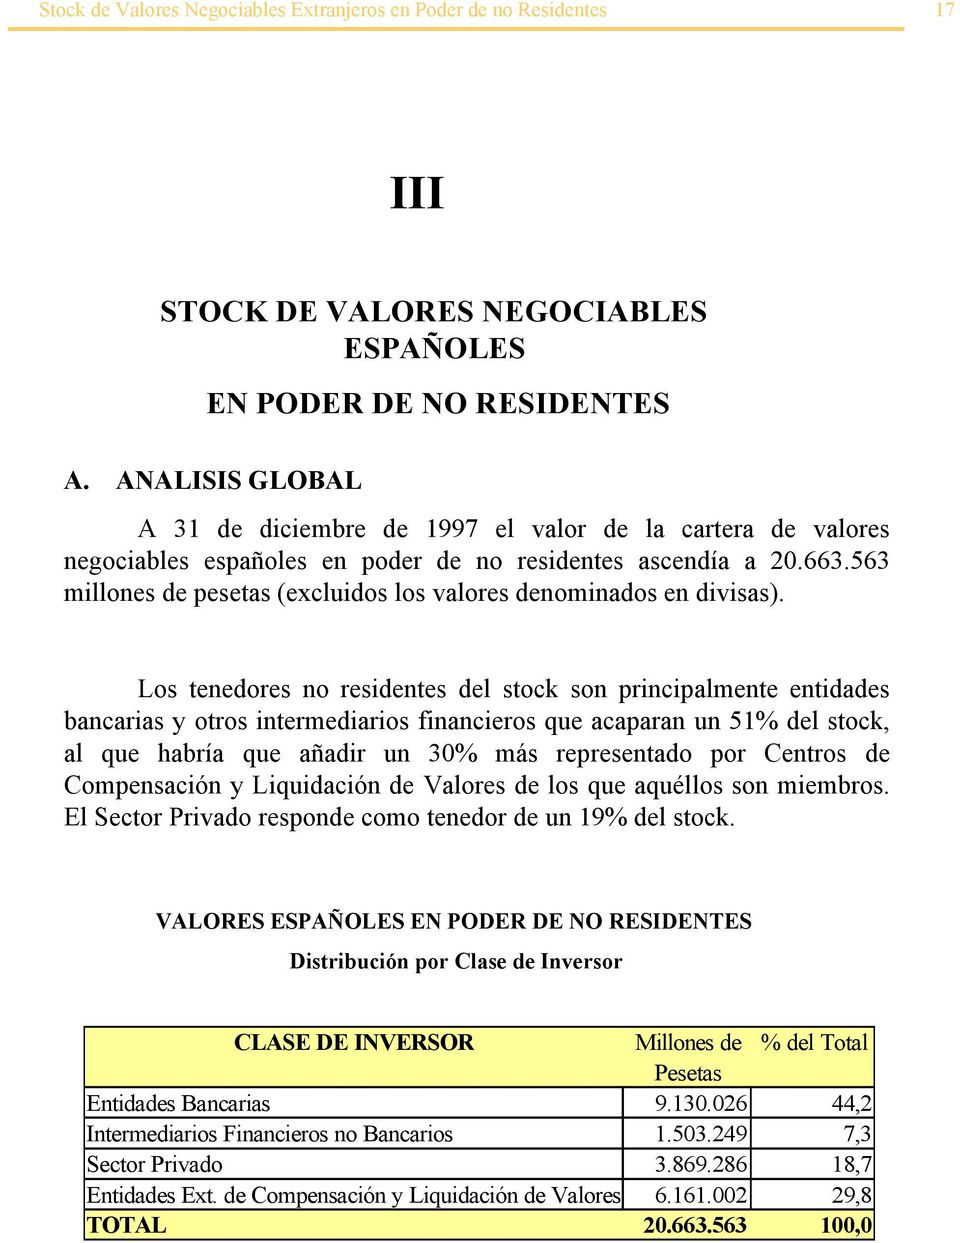 563 millones de pesetas (excluidos los valores denominados en divisas).